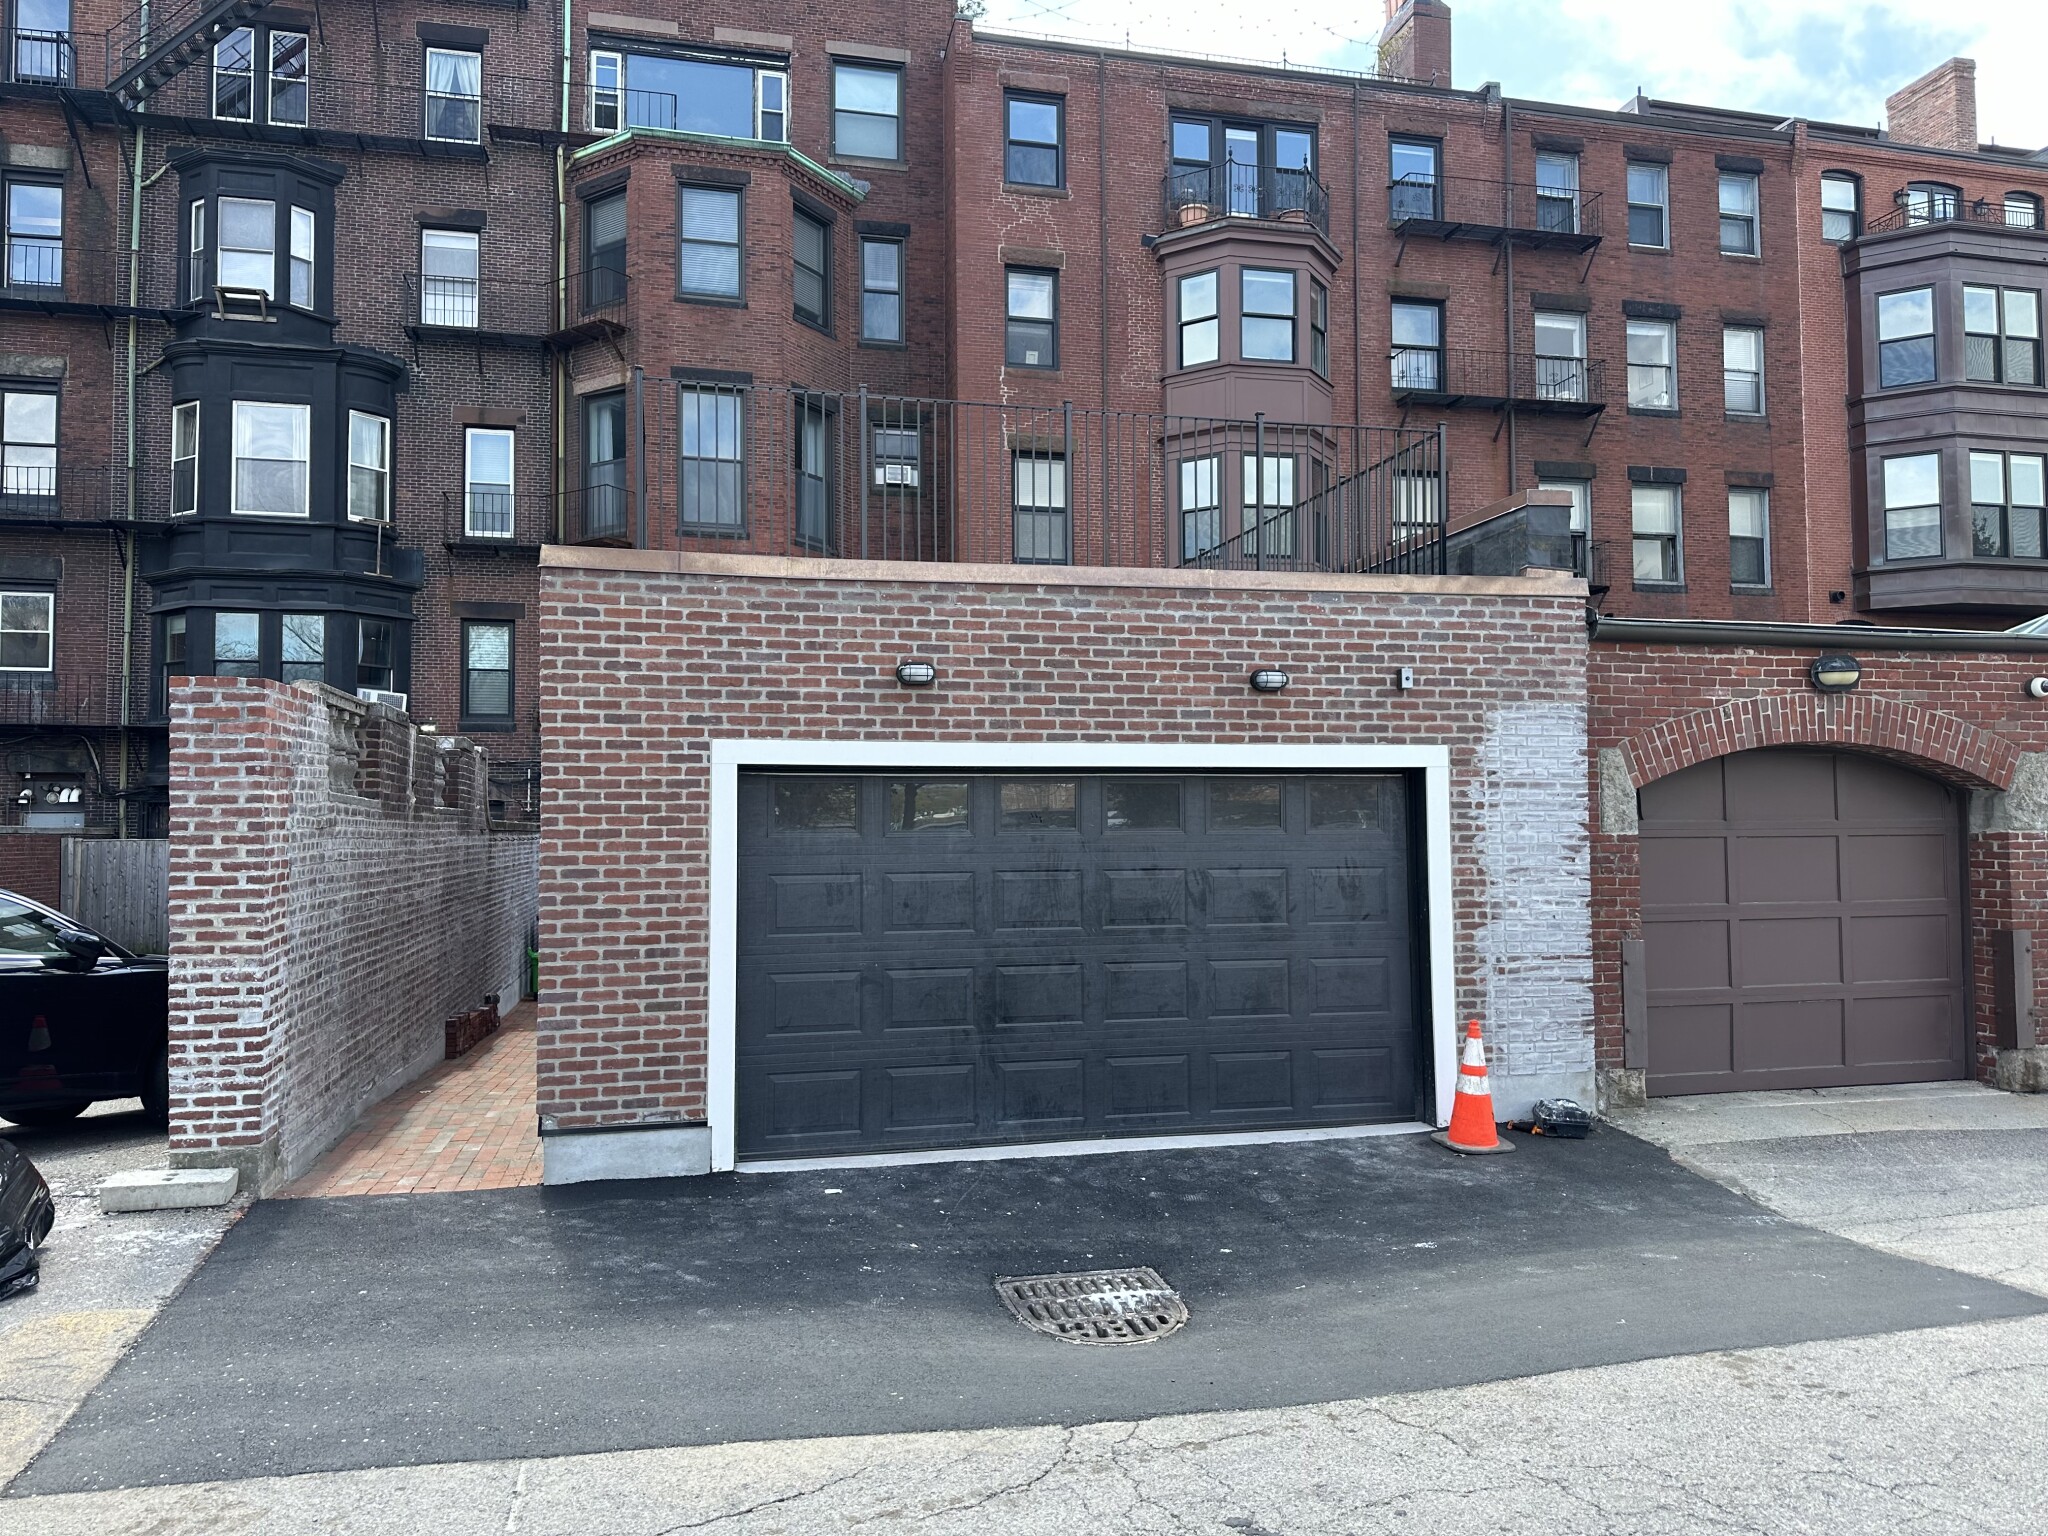 Photos of apartment on Boylston St.,Boston MA 02116